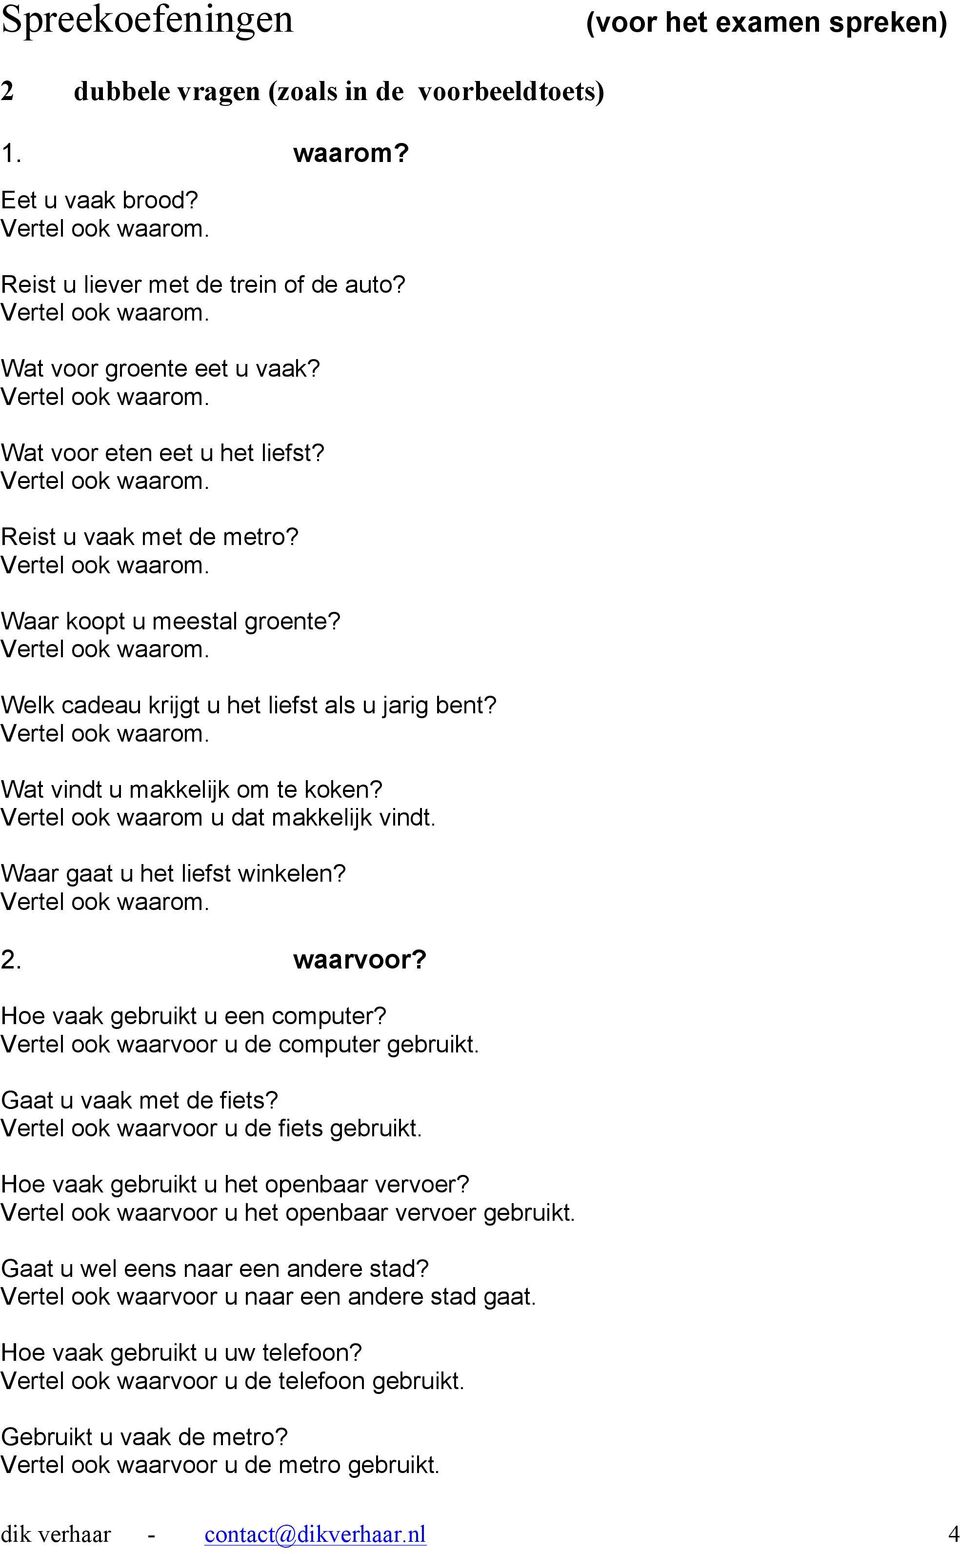 dief Netto Wolkenkrabber Spreekoefeningen. Oefenen voor het eerste deel van het examen spreken:  Vragen beantwoorden. 1 enkele vragen. (voor het inburgeringsexamen -  spreken) - PDF Free Download